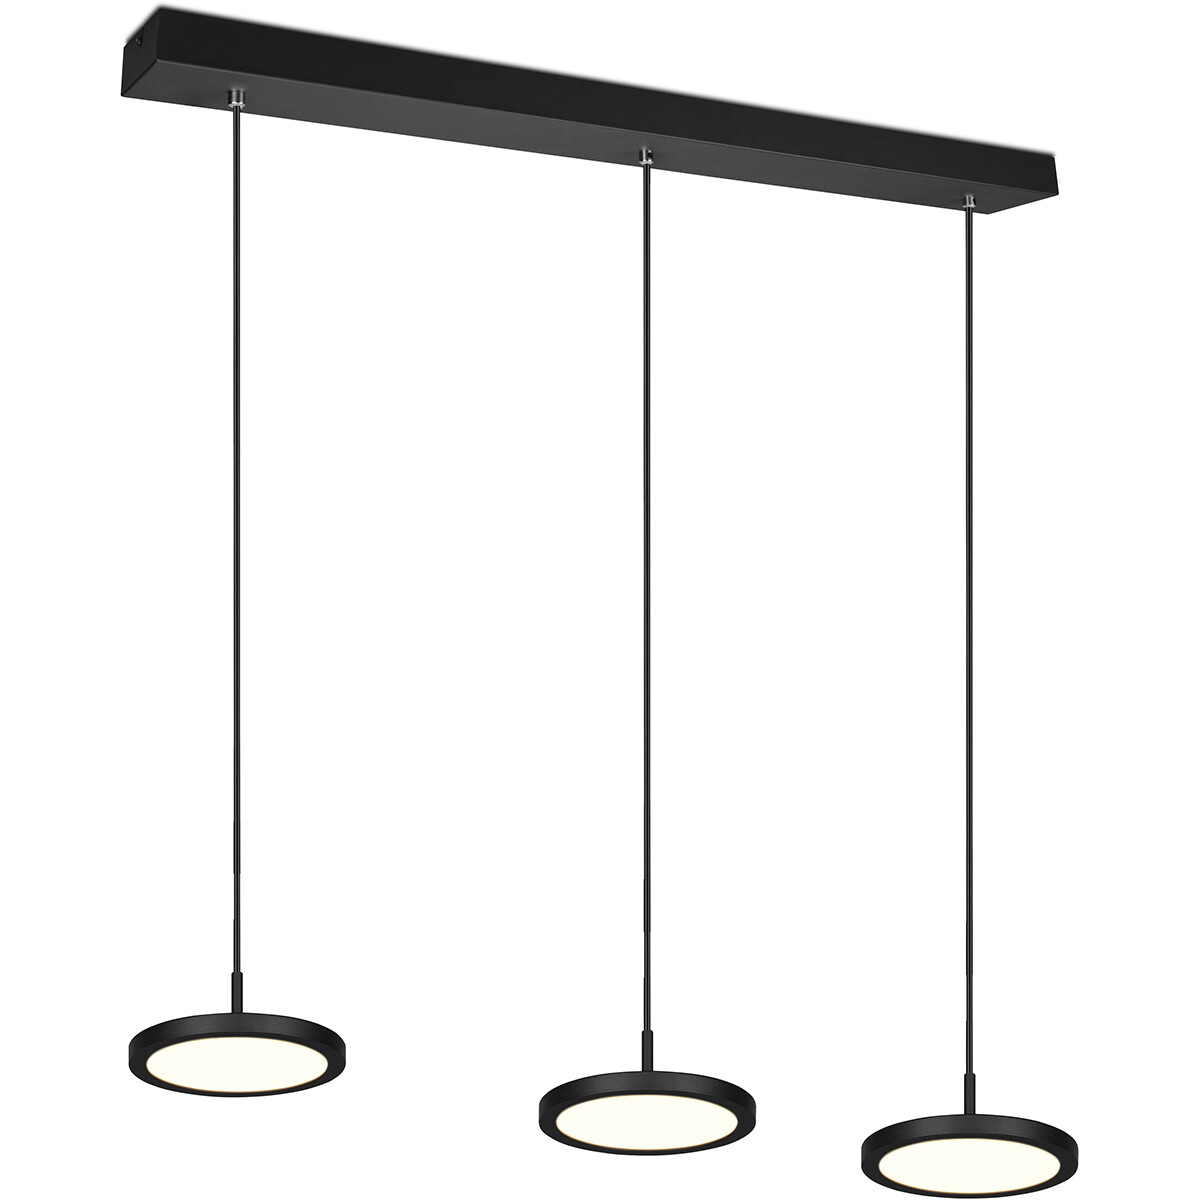 LED Hanglamp Hangverlichting Trion Trula 30W 3-lichts Warm Wit 3000K Dimbaar Rechthoek Mat Zwart Alu